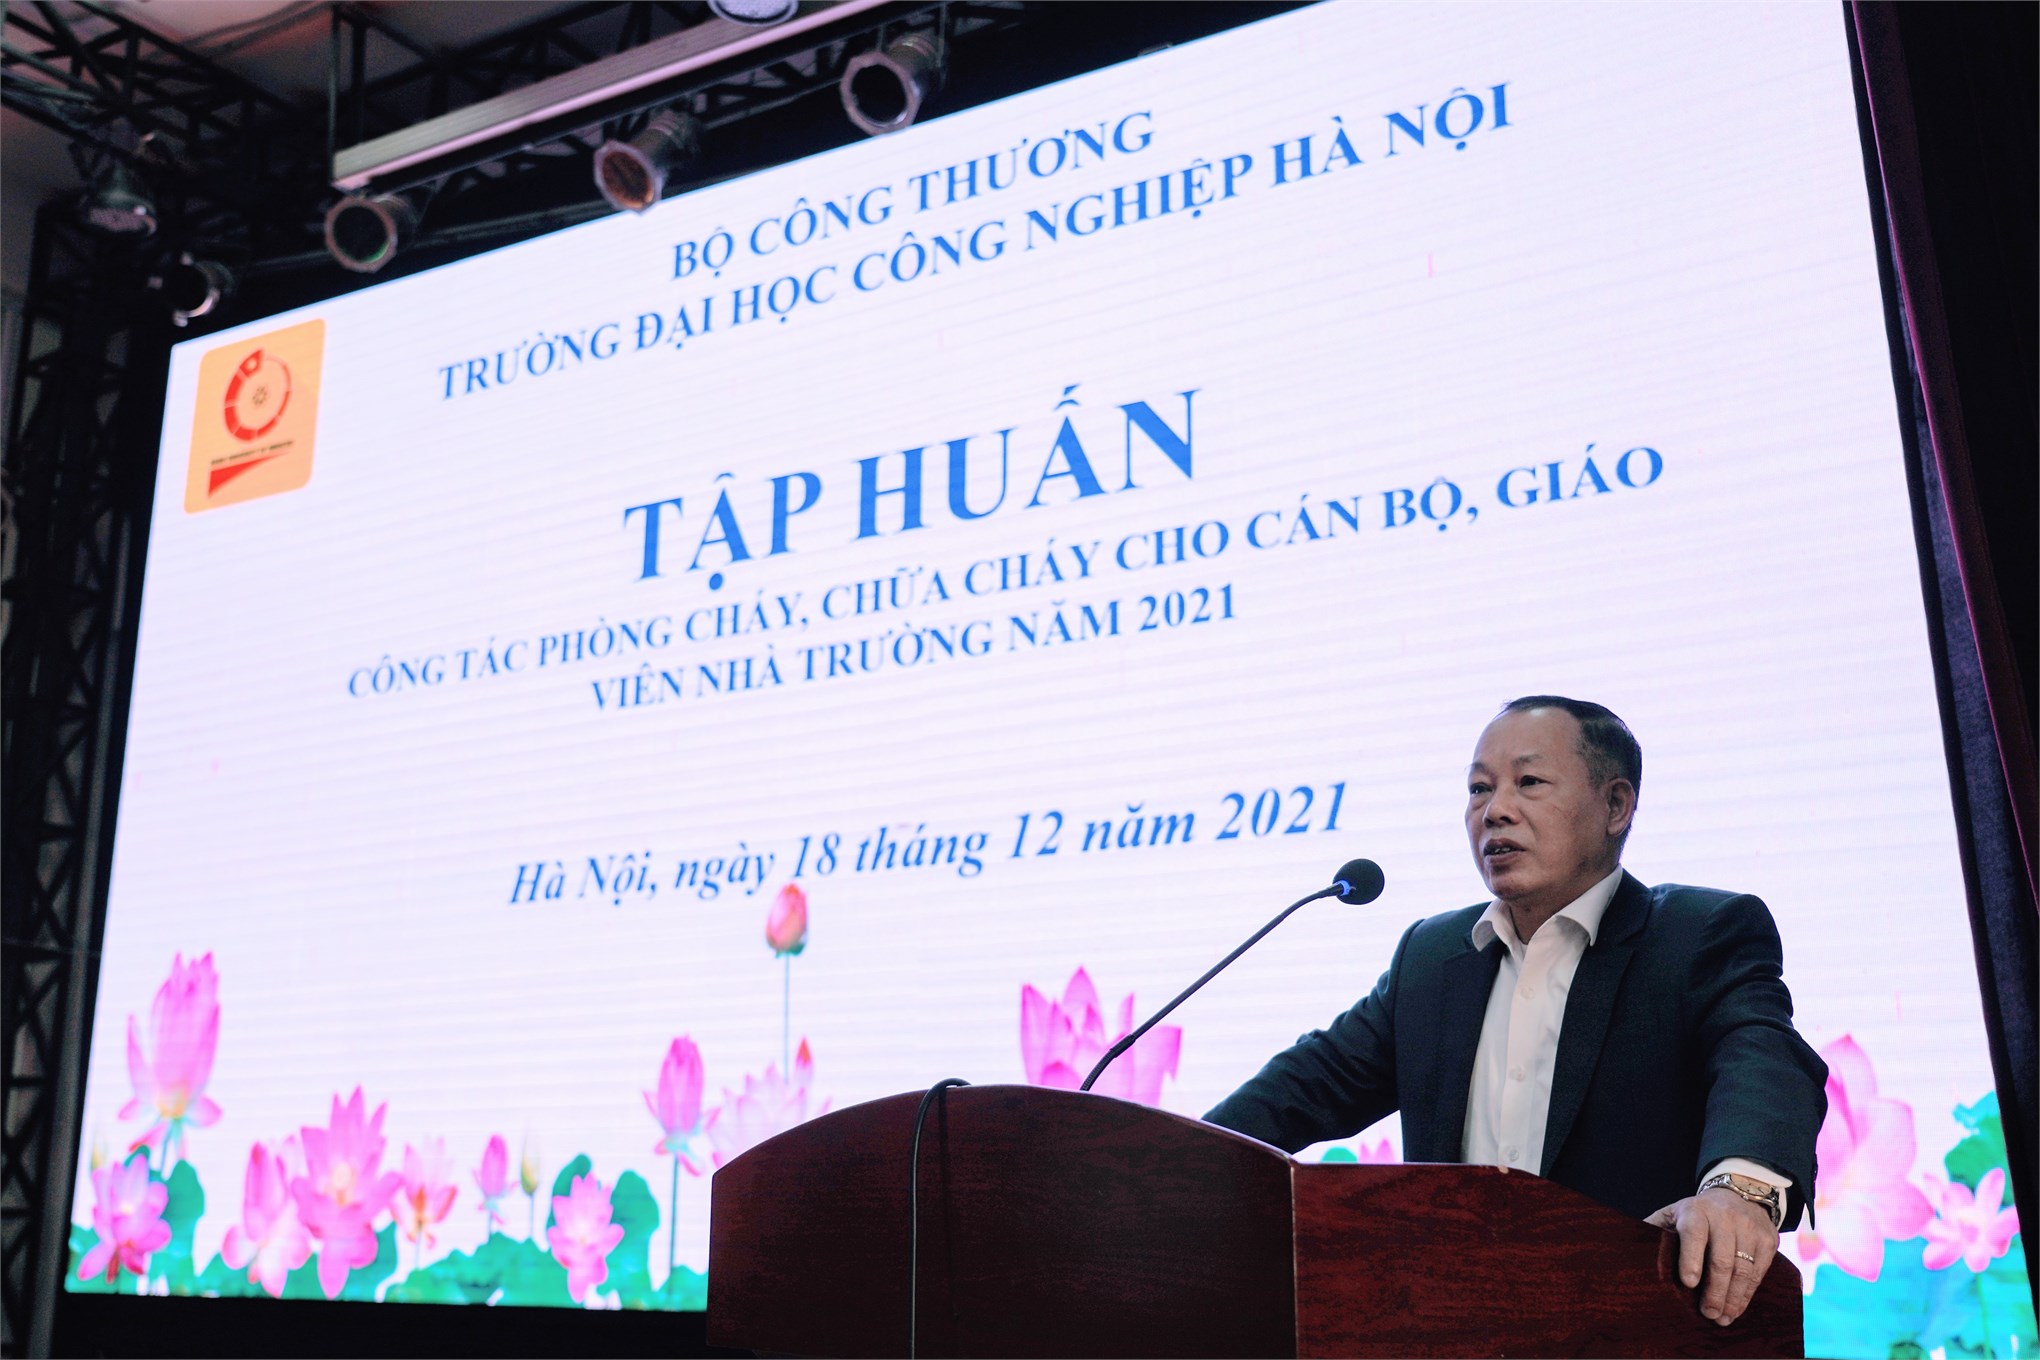 TS. Nguyễn Anh Tuấn - Phó Hiệu trưởng nhà trường, Trưởng ban PCCC&CNCH ĐHCNHN phát biểu khai mạc